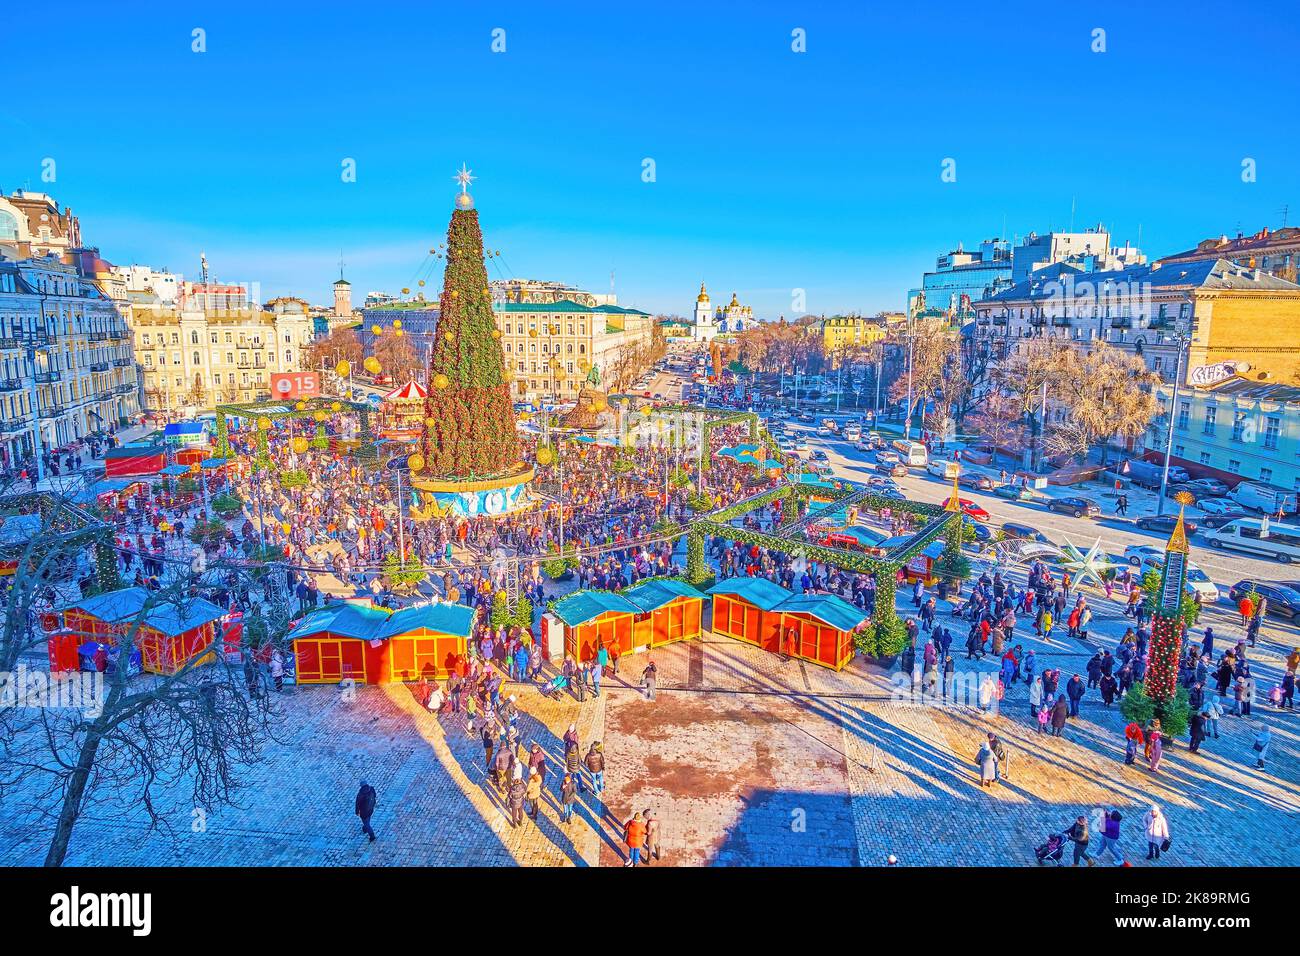 KIEV, UCRANIA - 2 DE ENERO de 2022: Disfrute de la vista superior de la concurrida Feria de Navidad con el árbol de Navidad principal, el 2 de enero en Kiev, Ucrania Foto de stock